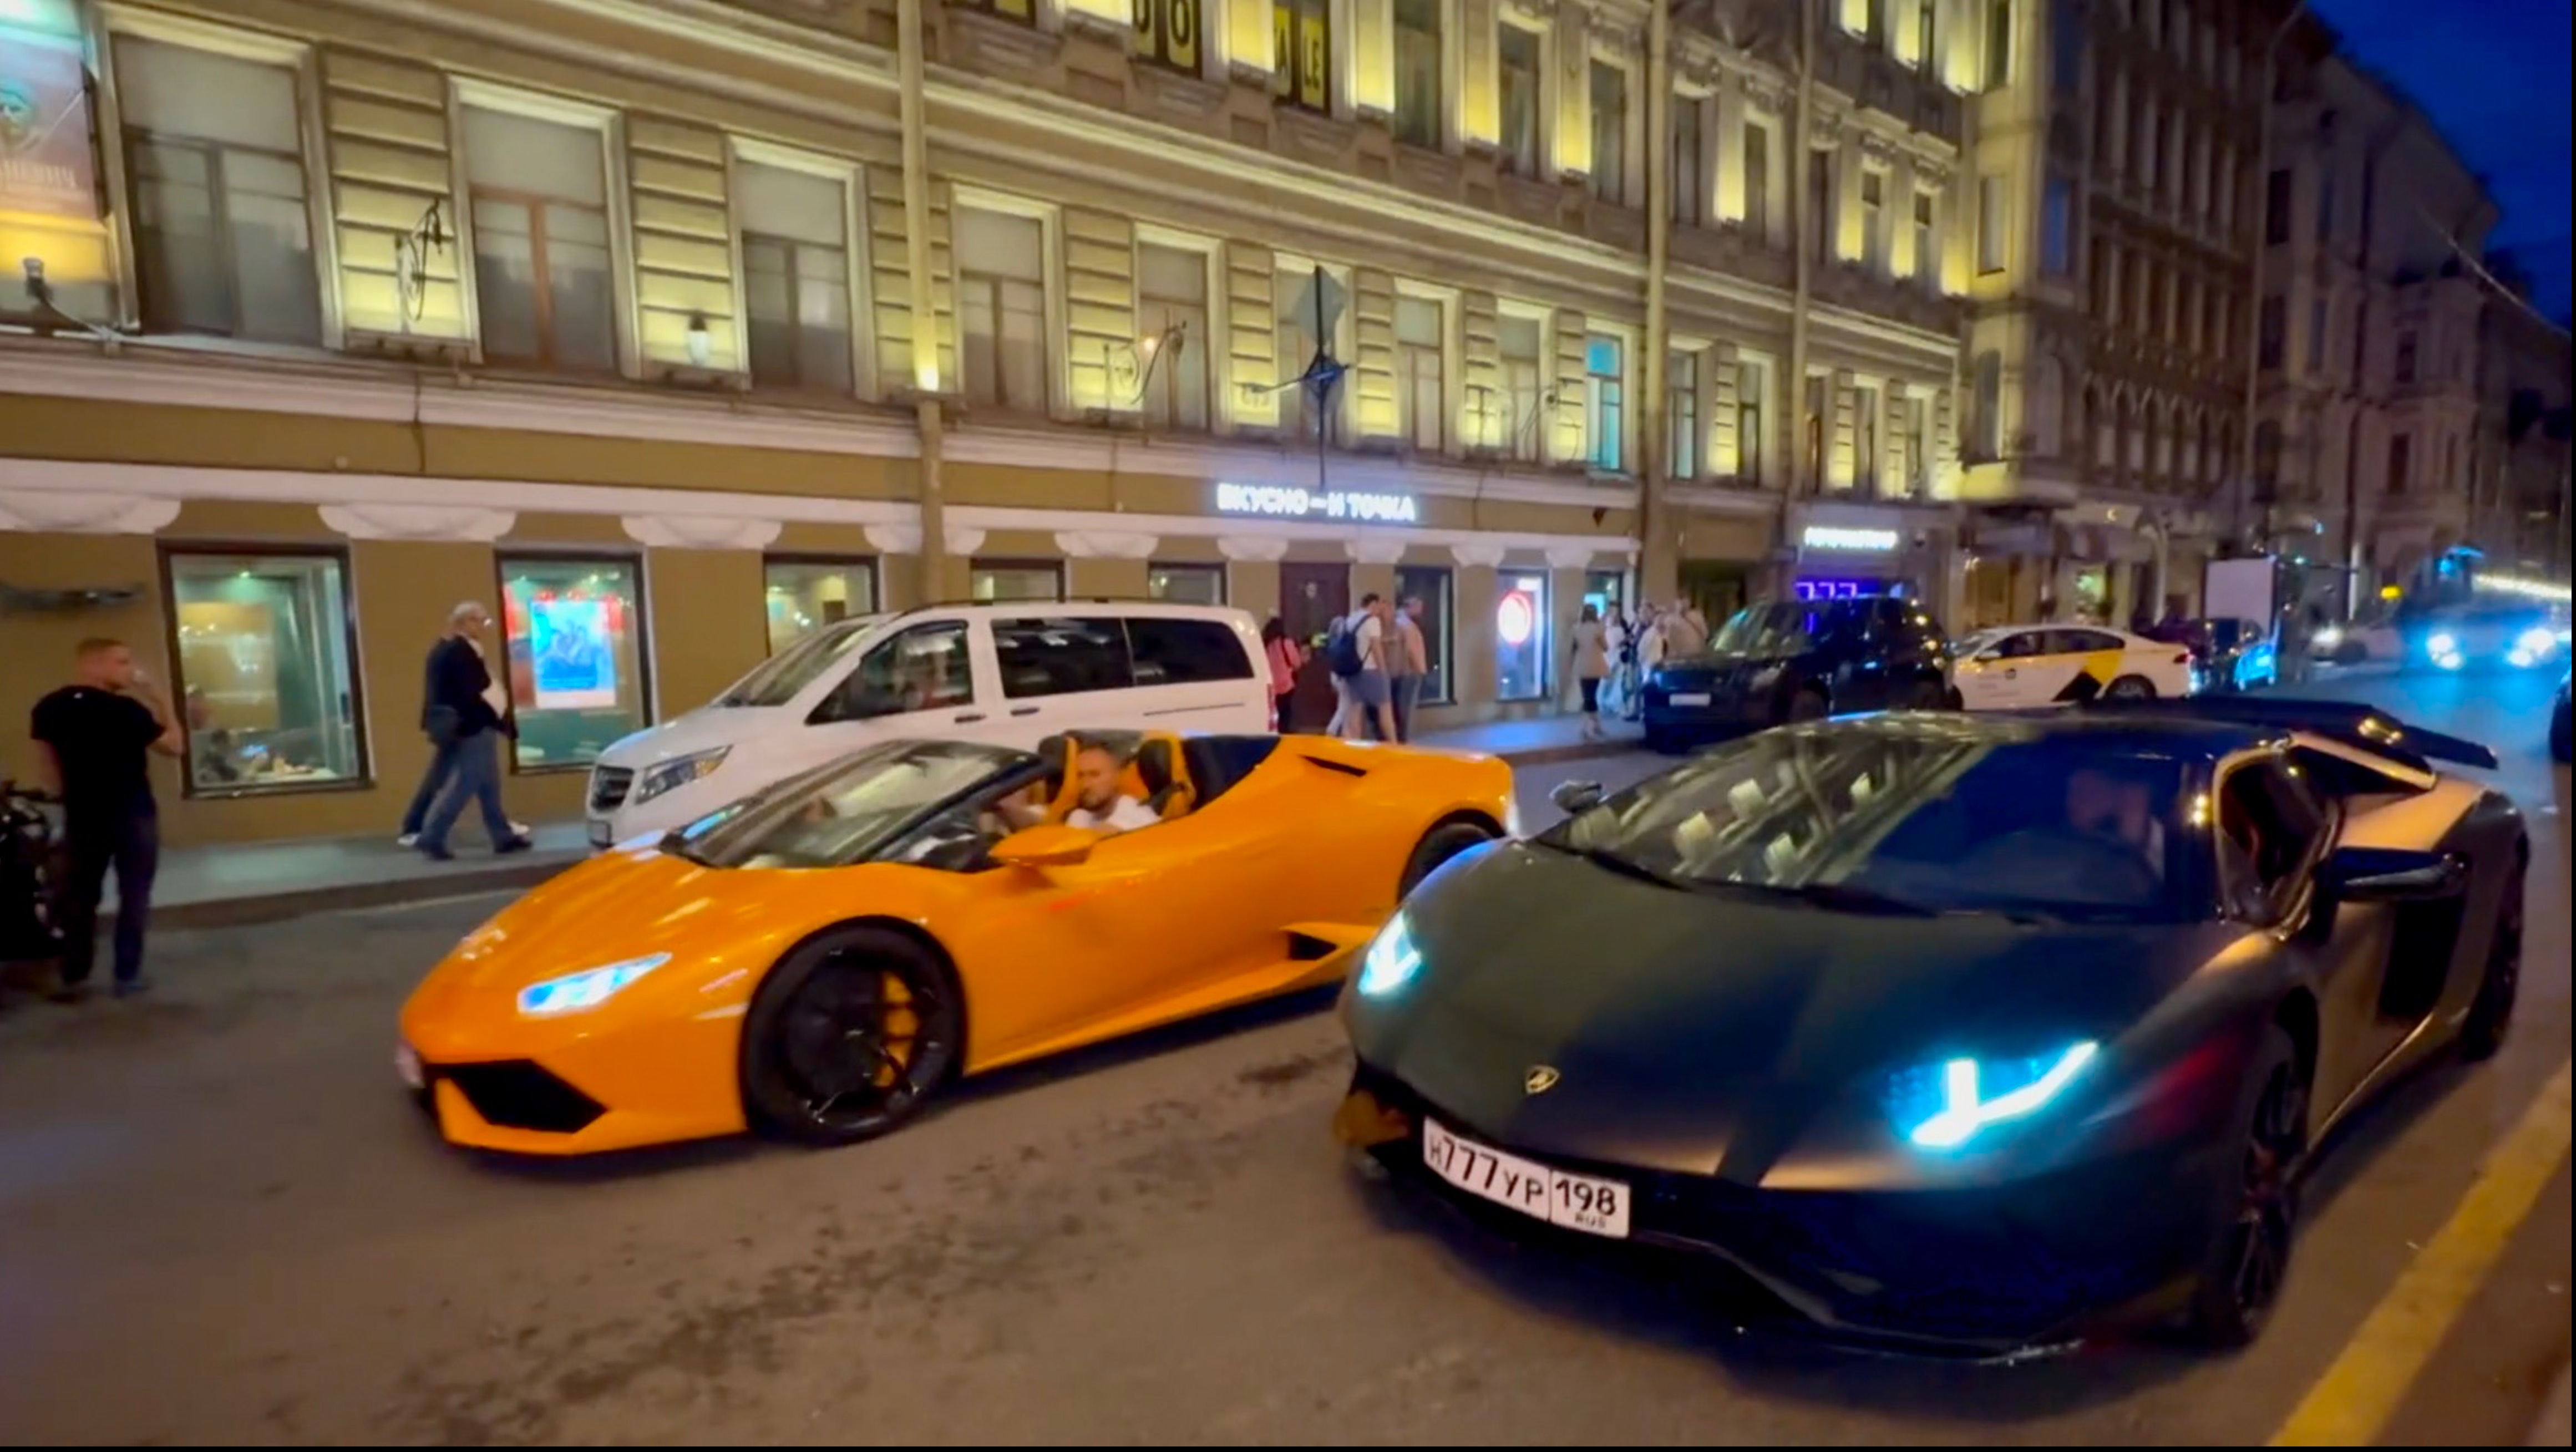 Ночная жизнь на улице Рубинштейна в пятницу вечером. Красивые машины Ламборгини. Санкт-Петербург.